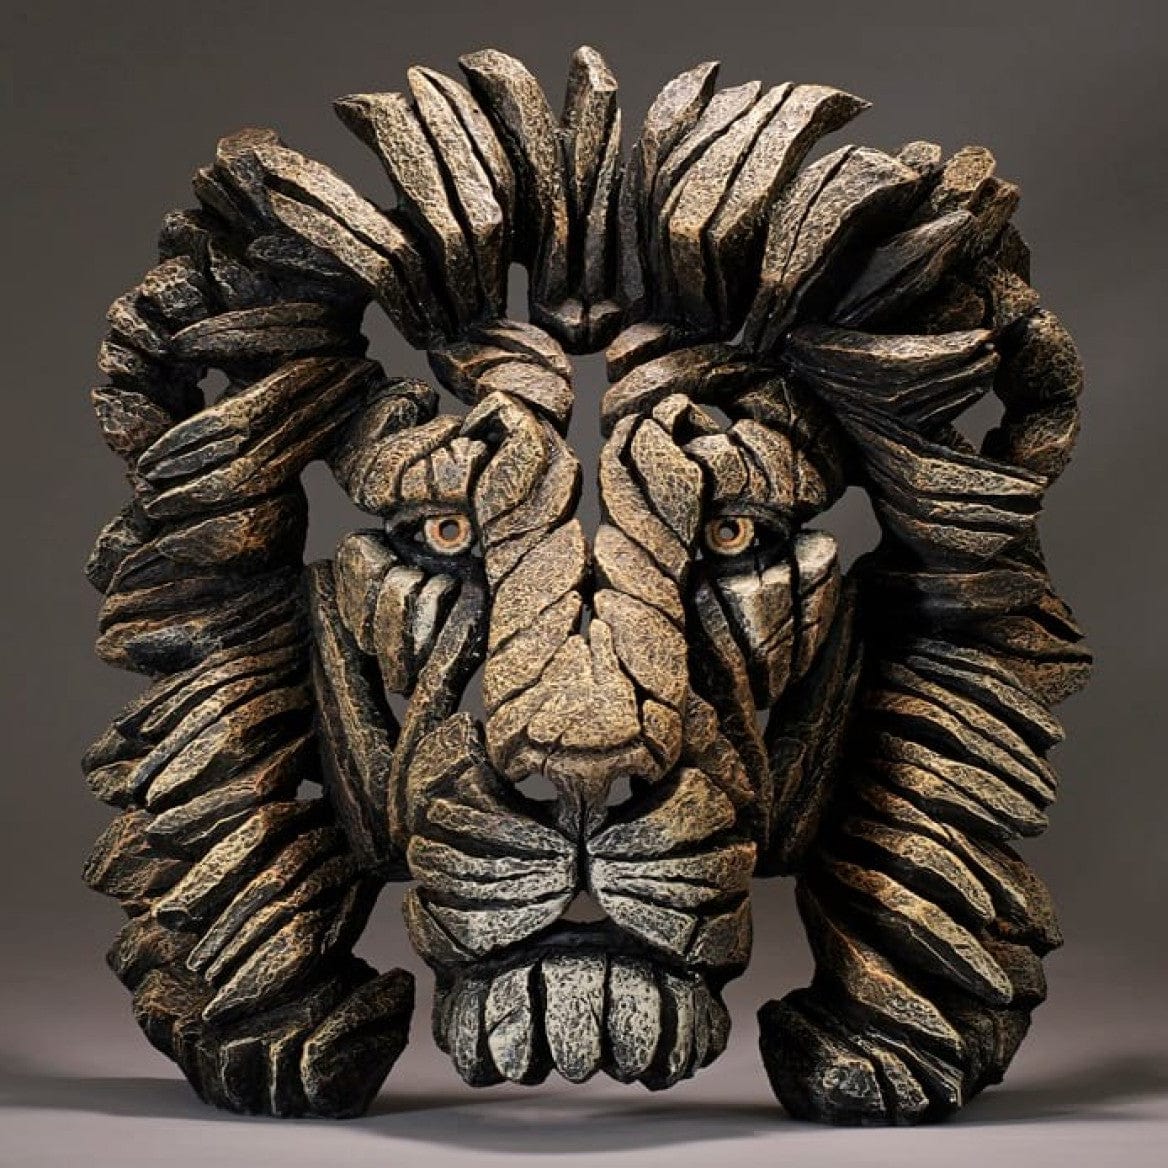 The Lair Lion Edge Sculpture